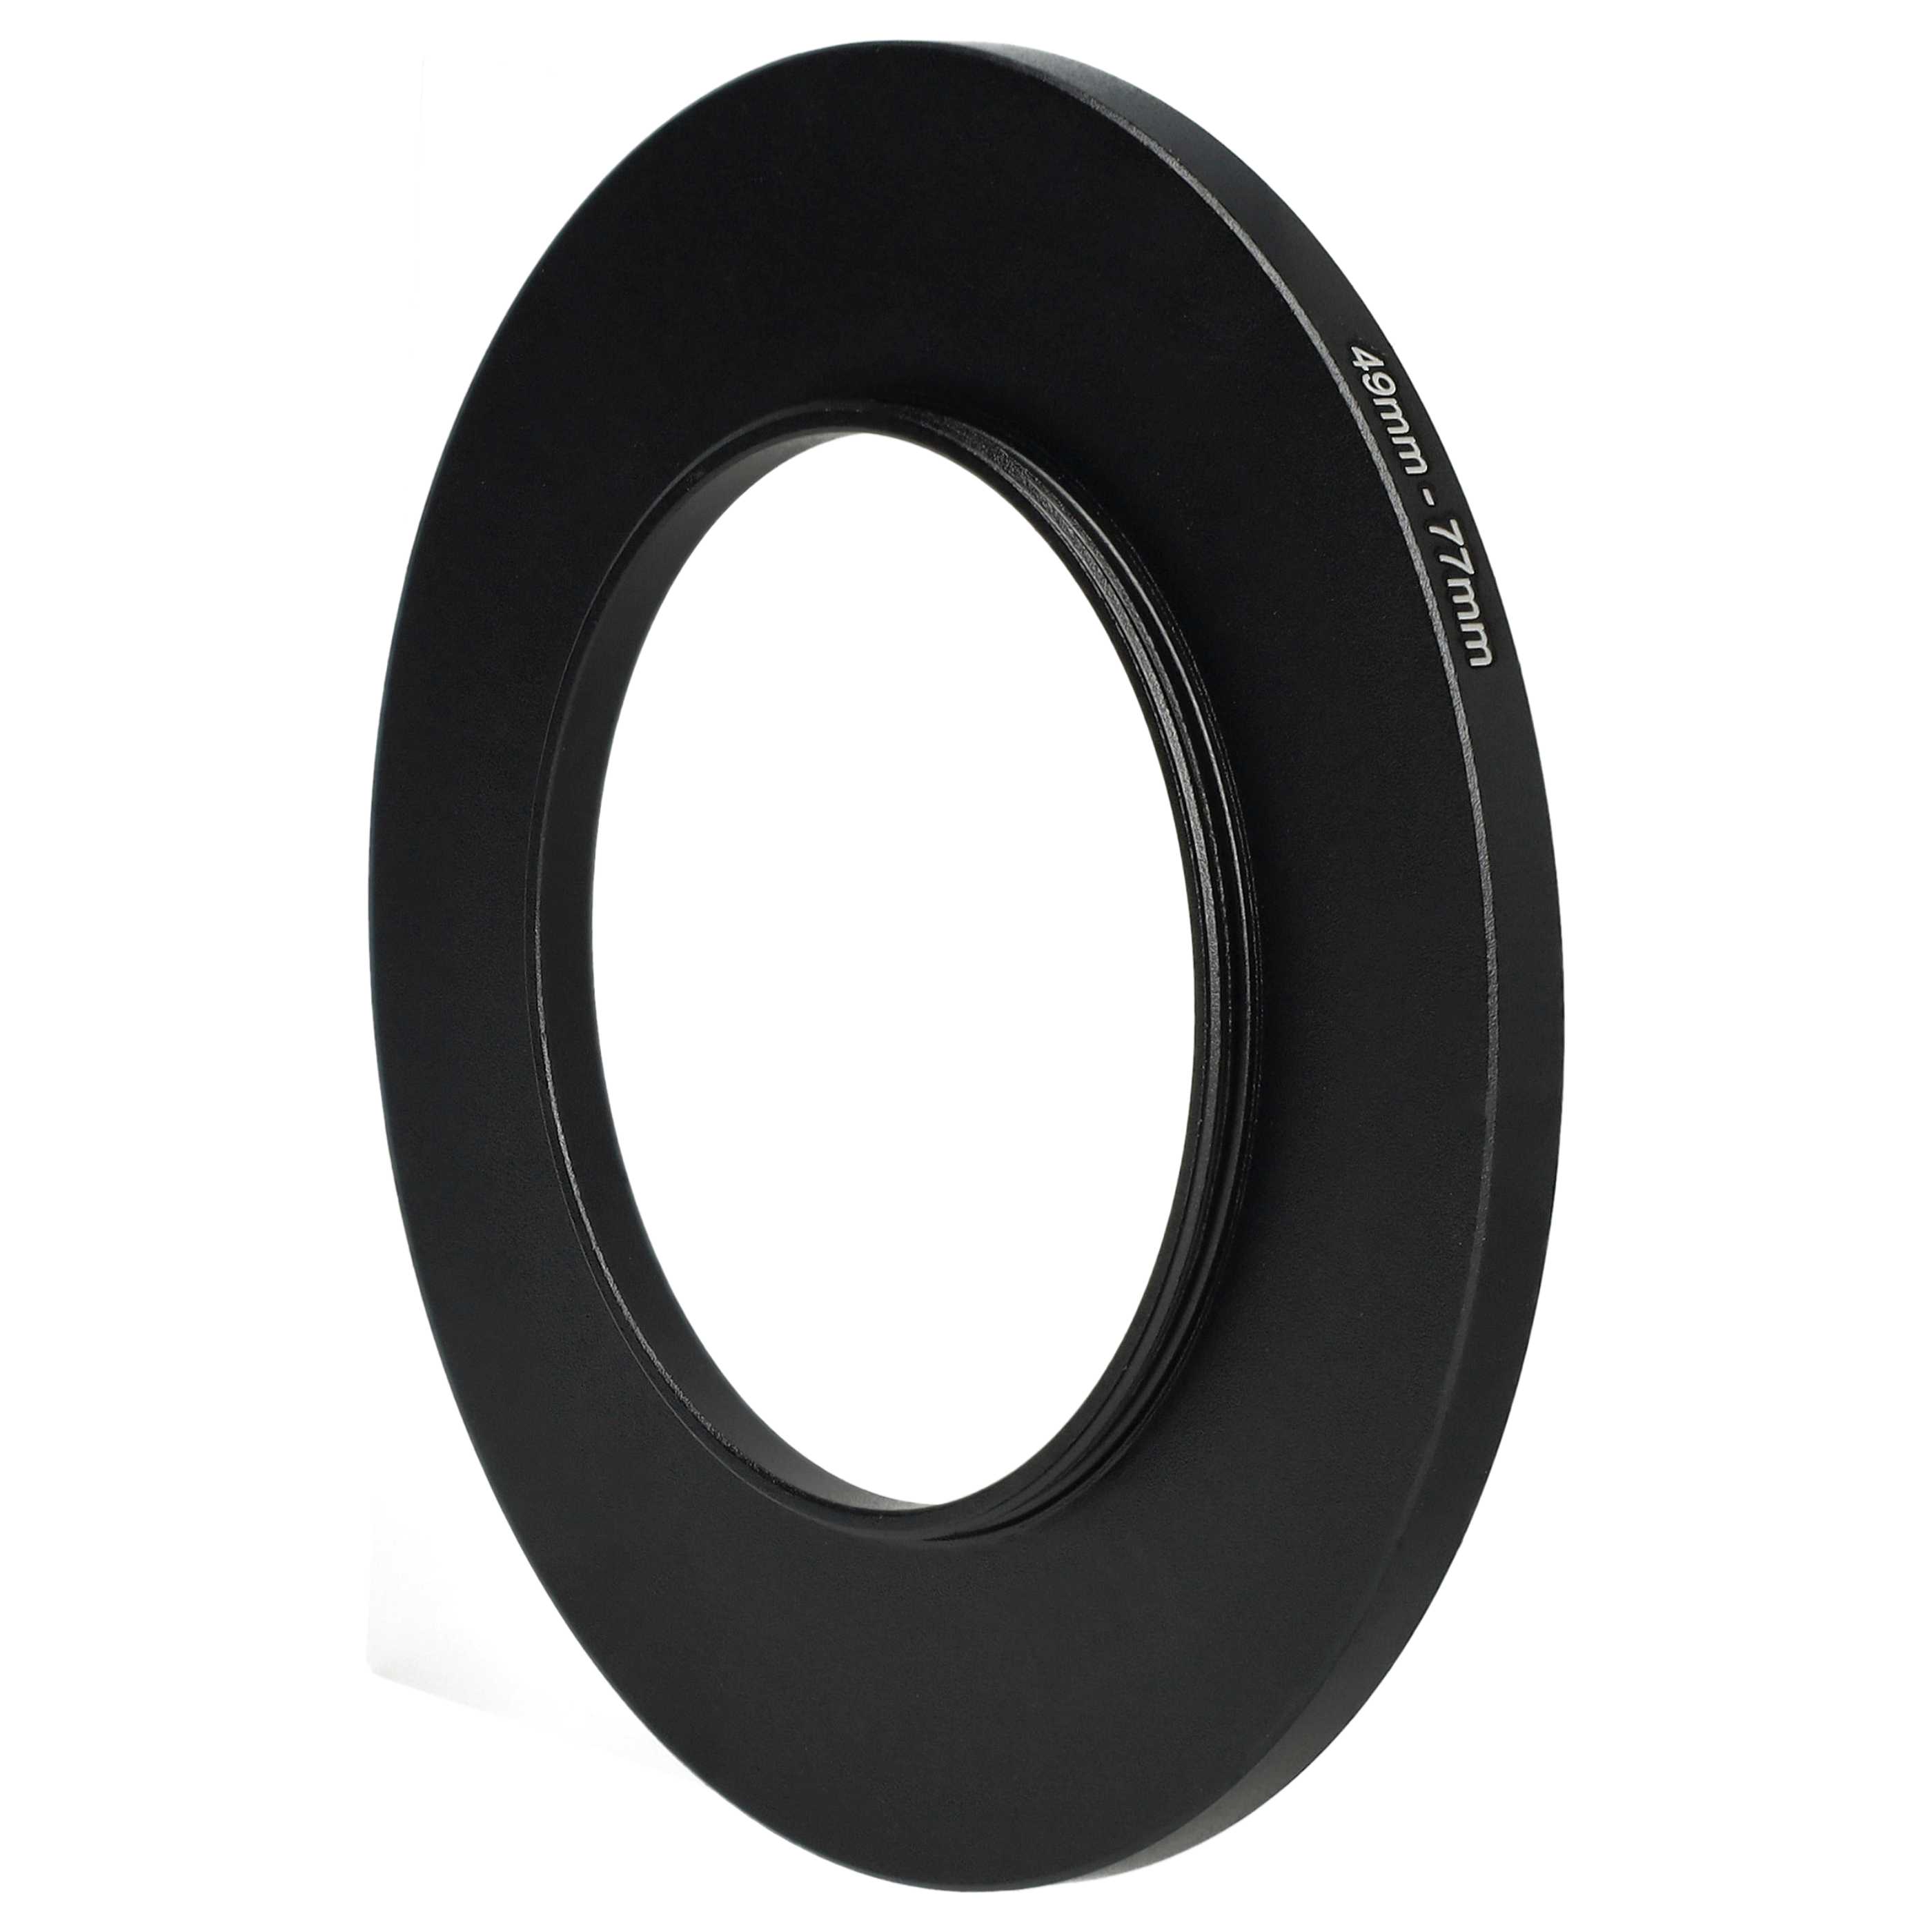 Step-Up-Ring Adapter 49 mm auf 77 mm passend für diverse Kamera-Objektive - Filteradapter